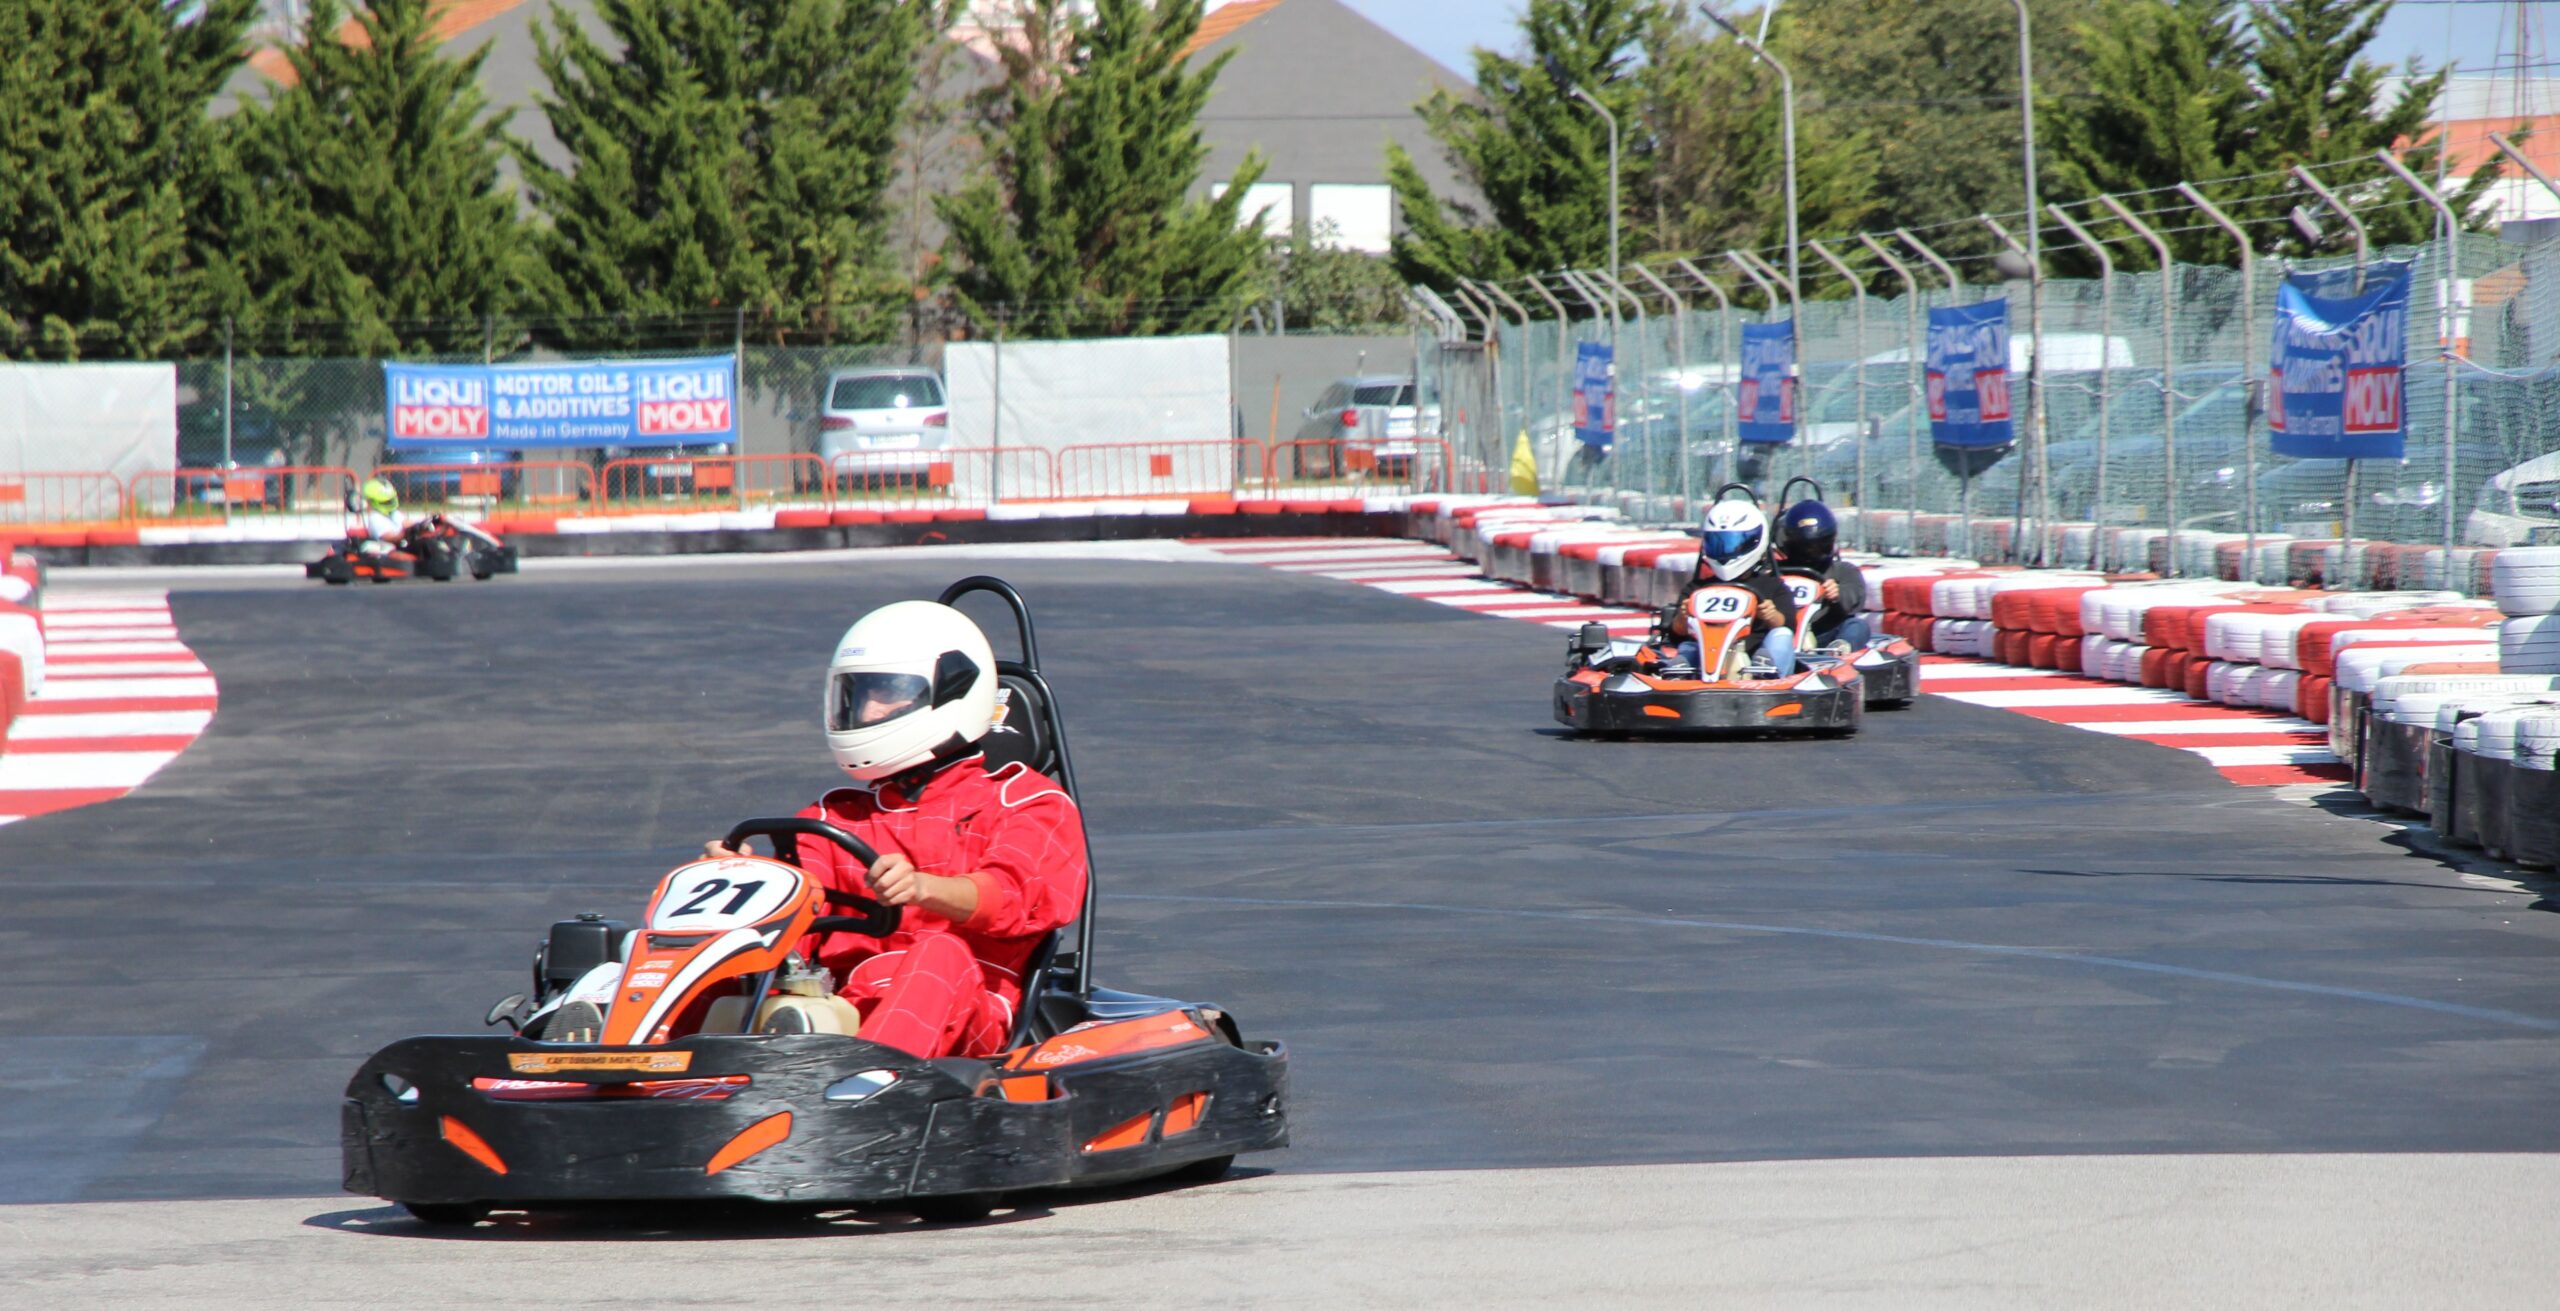 Kartódromo do Montijo 🏎 #fyp #karting #f1 #montijo